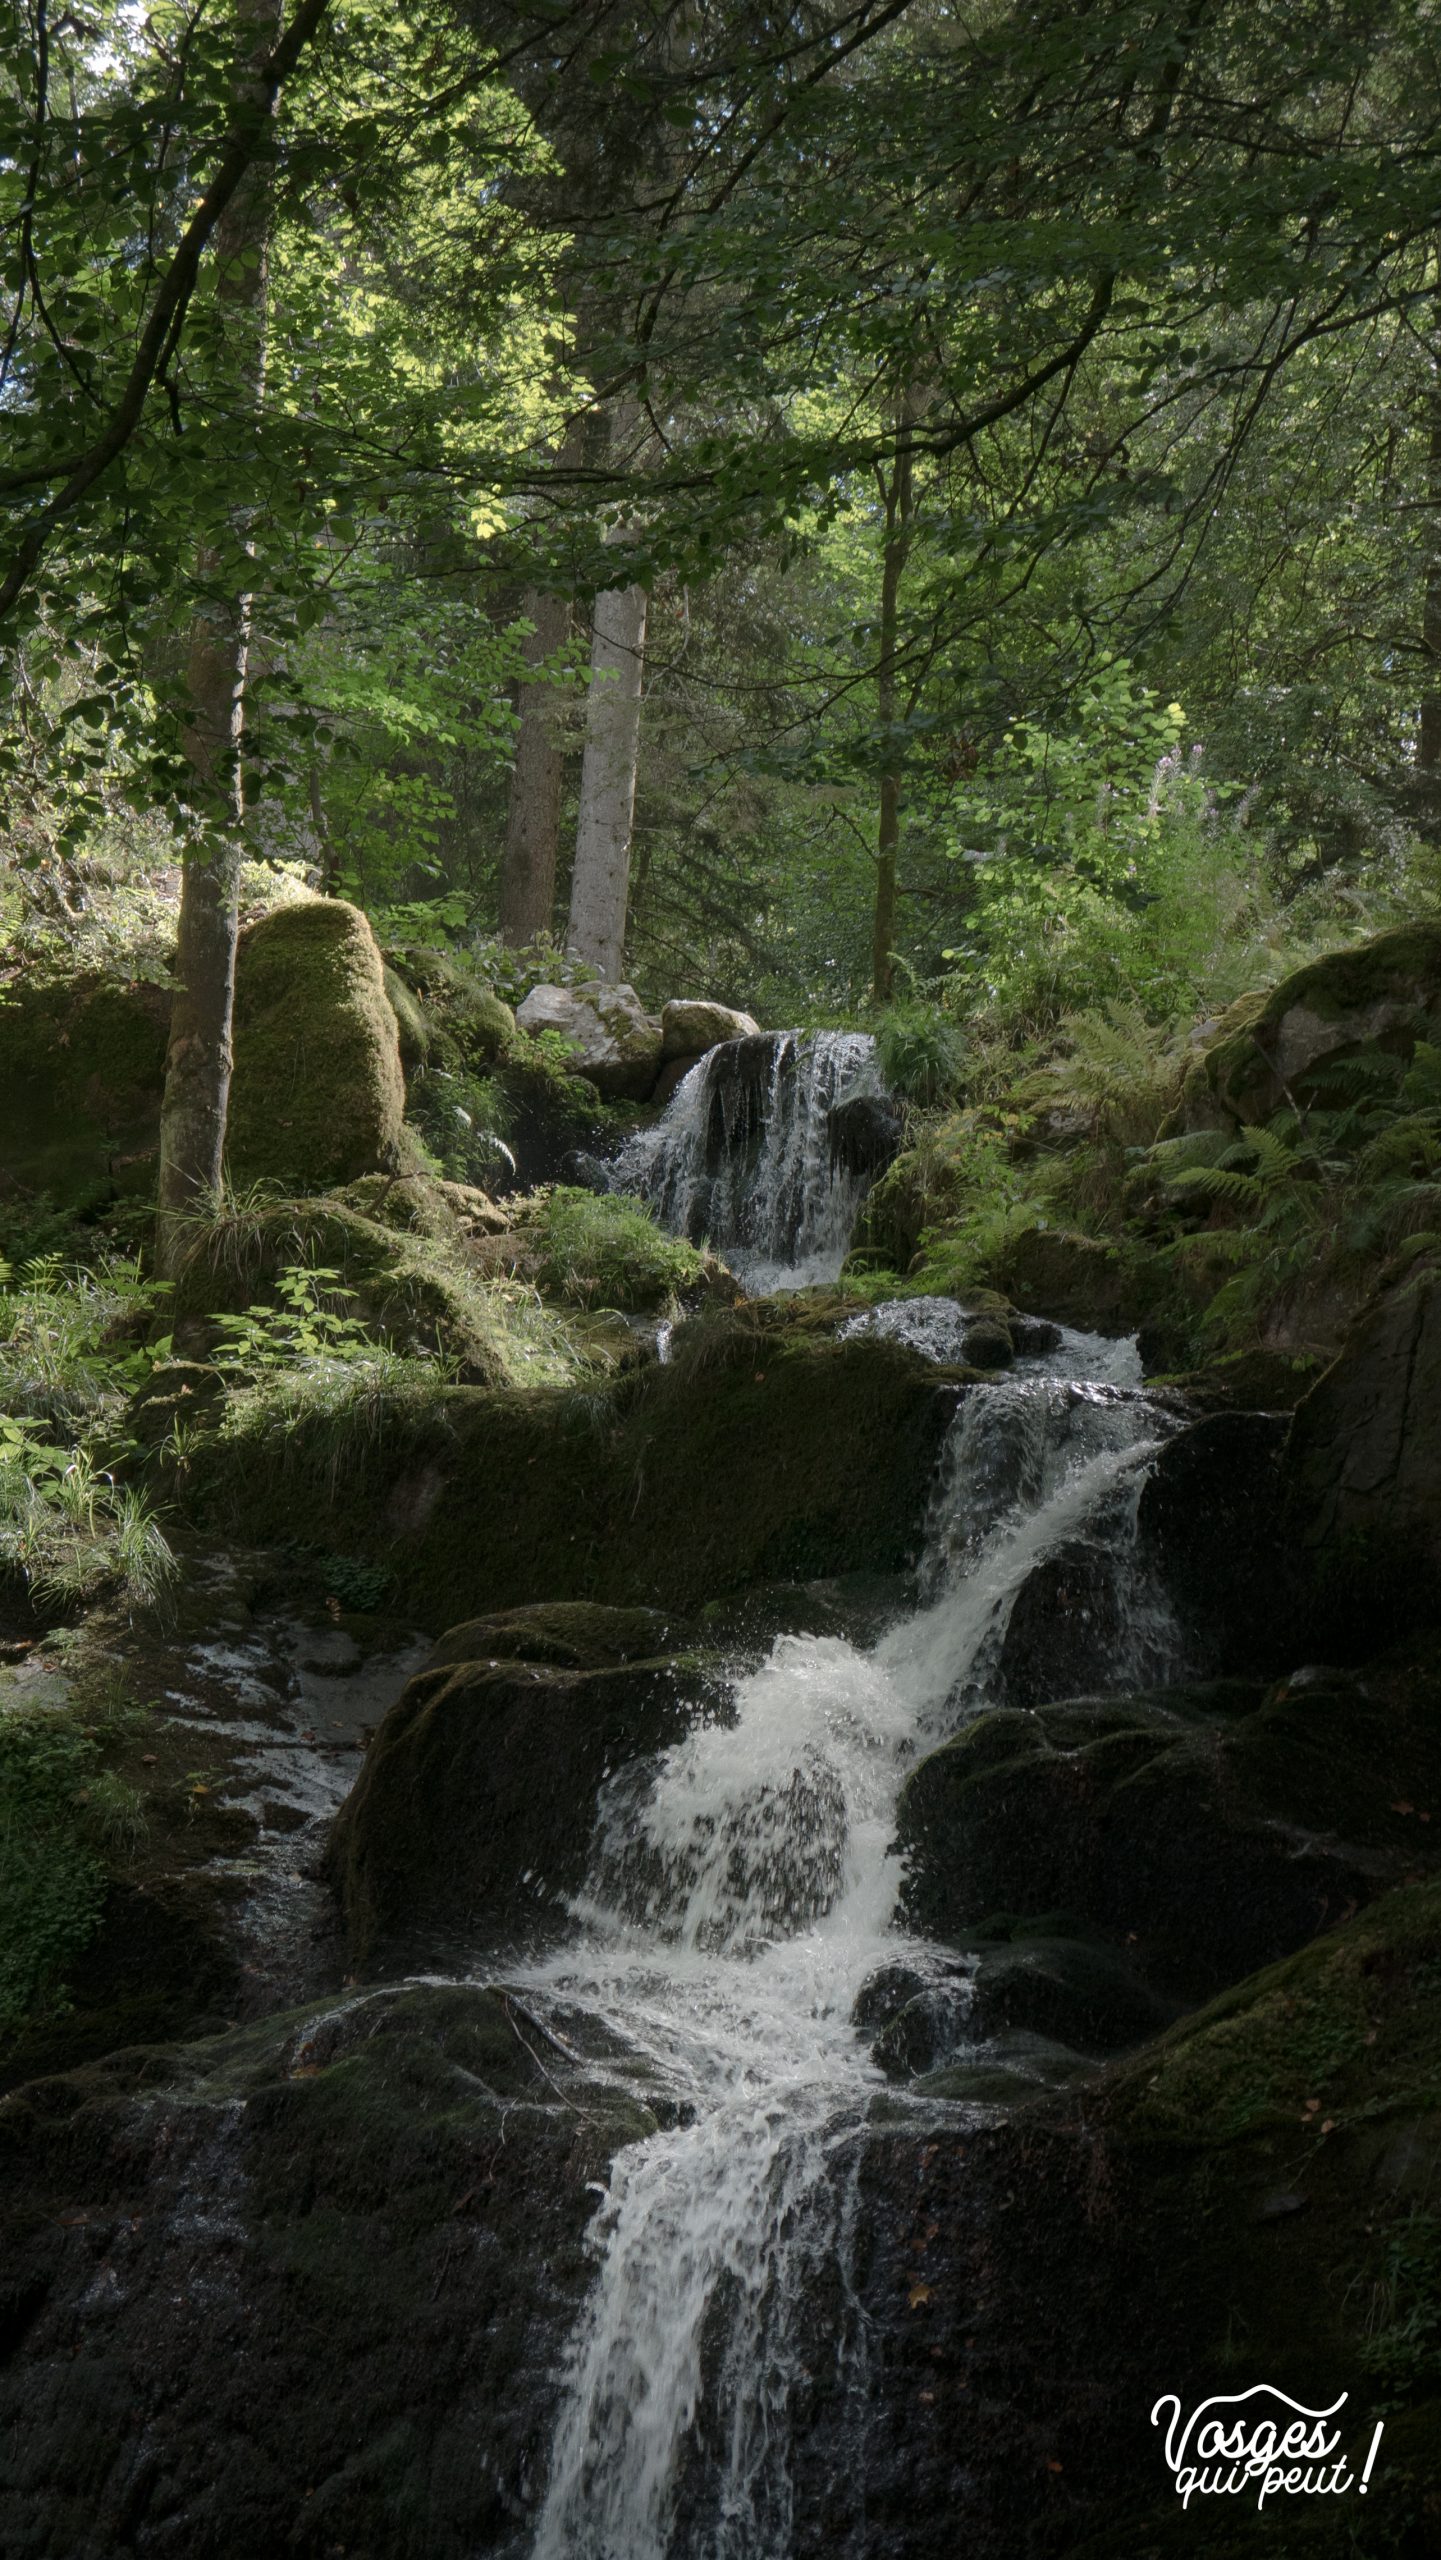 L'eau de la cascade de la Serva jaillit en pleine forêt